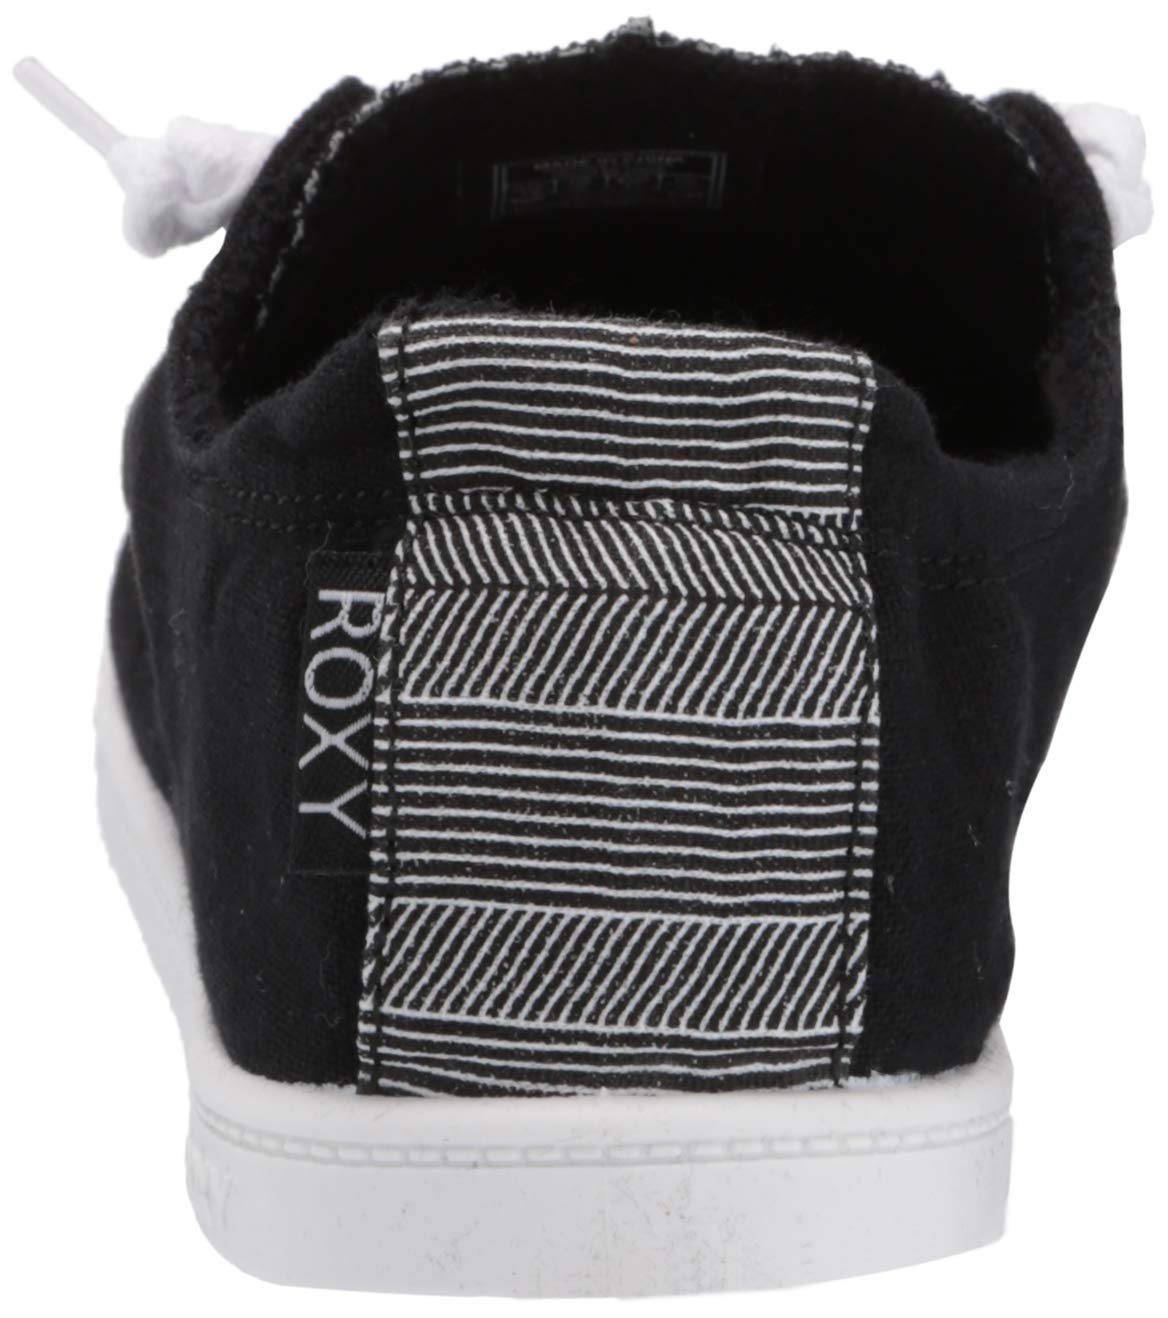 Roxy Women's Bayshore Slip on Shoe Sneaker